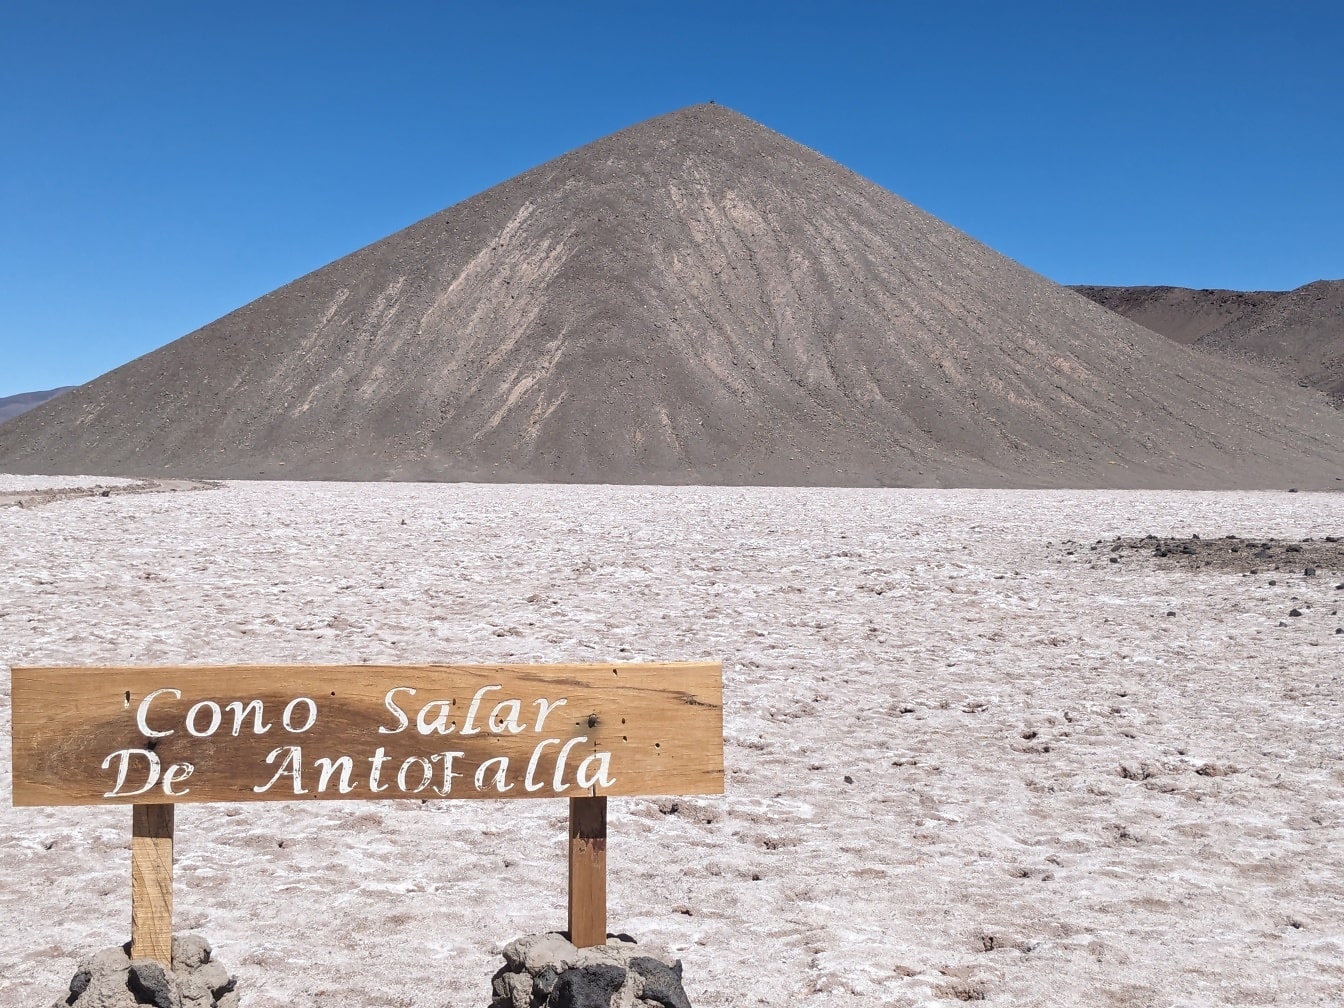 Der Salar de Antofalla ist eine Salzwüste, die sich in der Puna de Atacama in Argentinien befindet